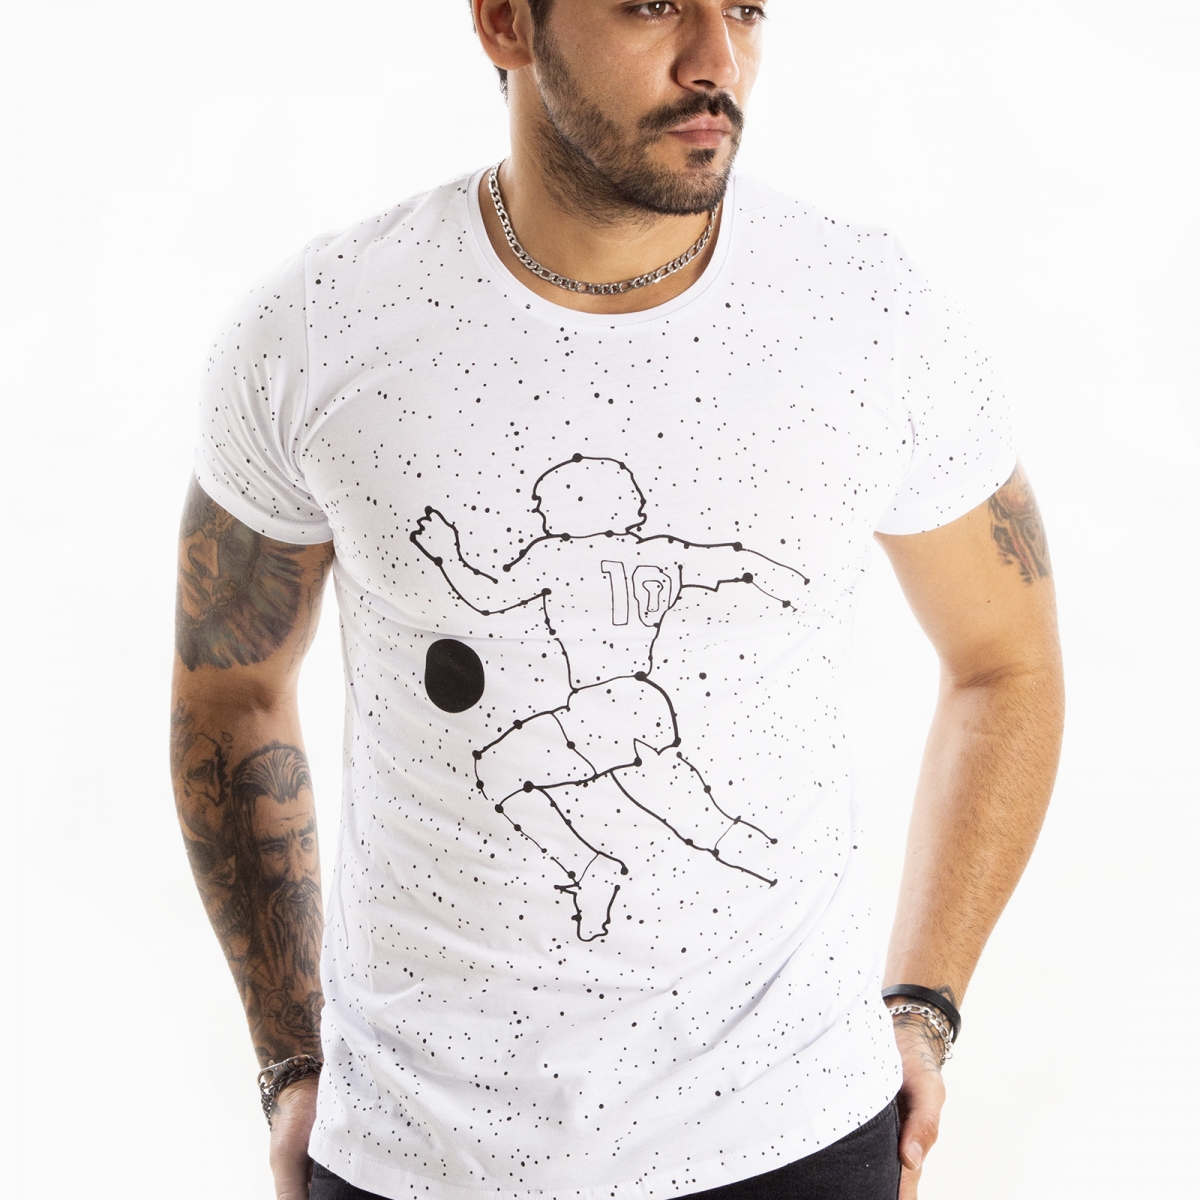 Flo DeepSEA Erkek Beyaz Noktalı Futbolcu Baskılı Kısa Kol Slim Fit Tişört 2100660. 2